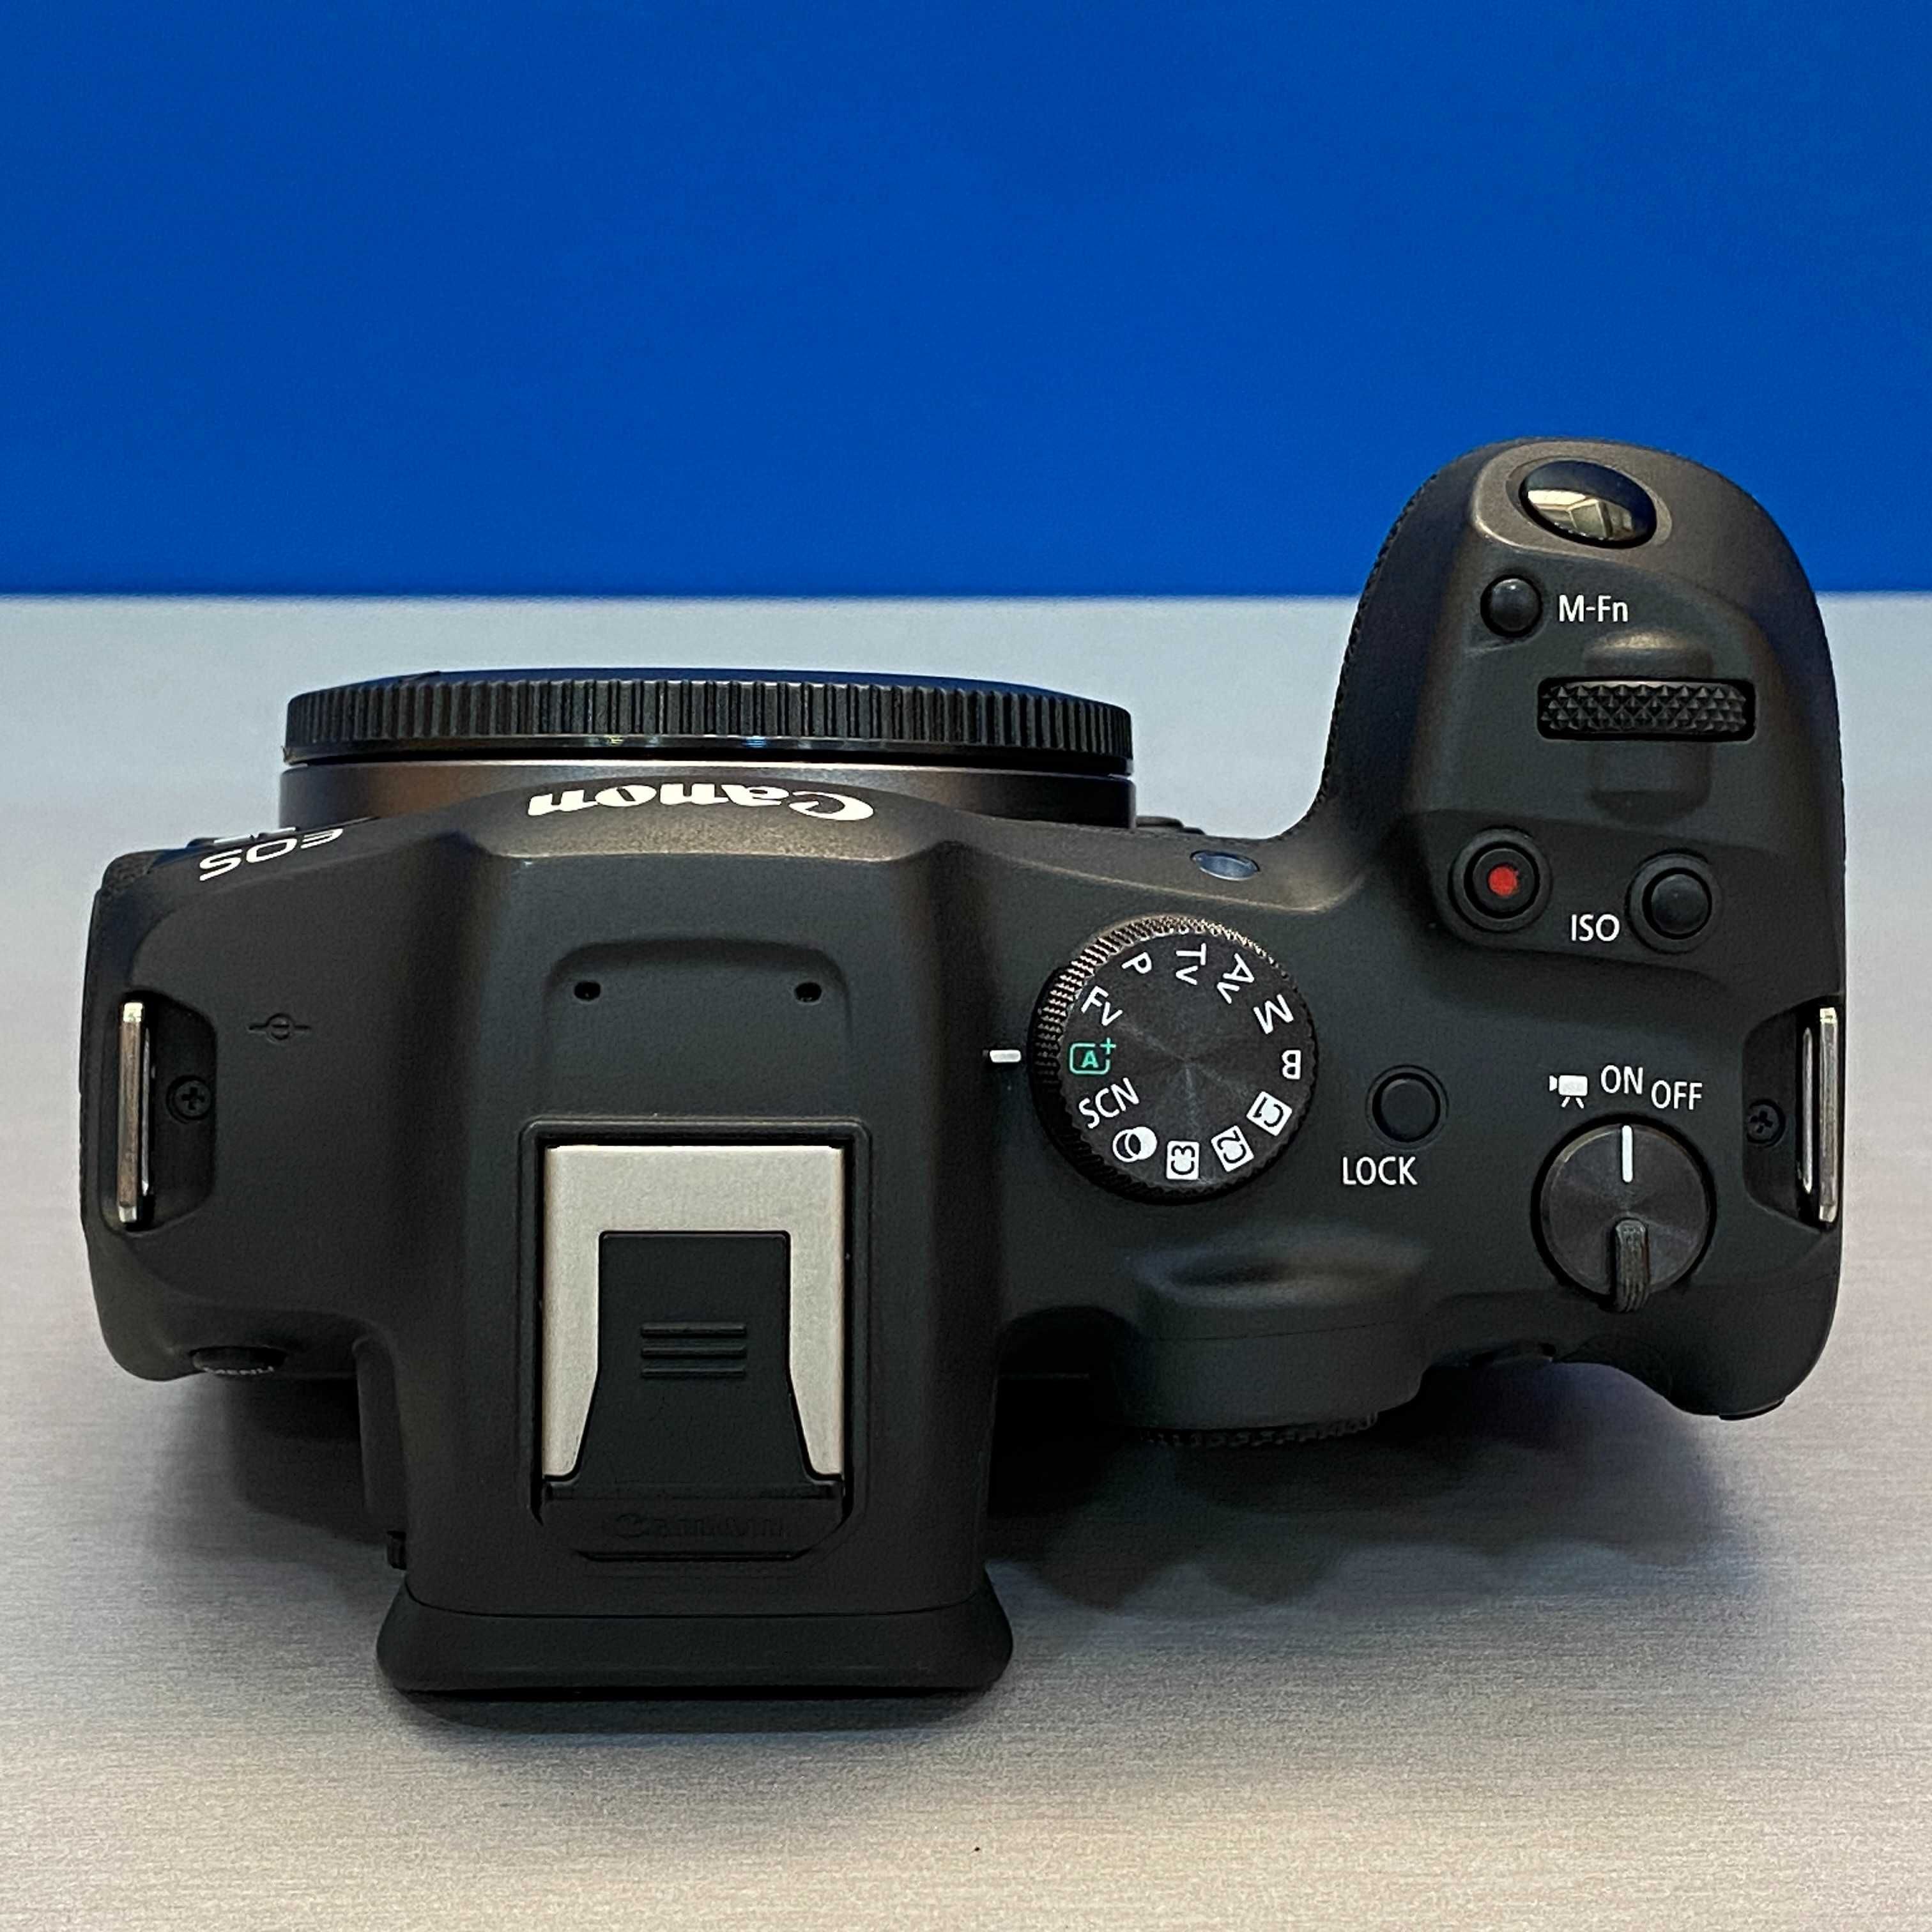 Canon EOS R7 (Corpo) - 32.5MP - 3 ANOS DE GARANTIA